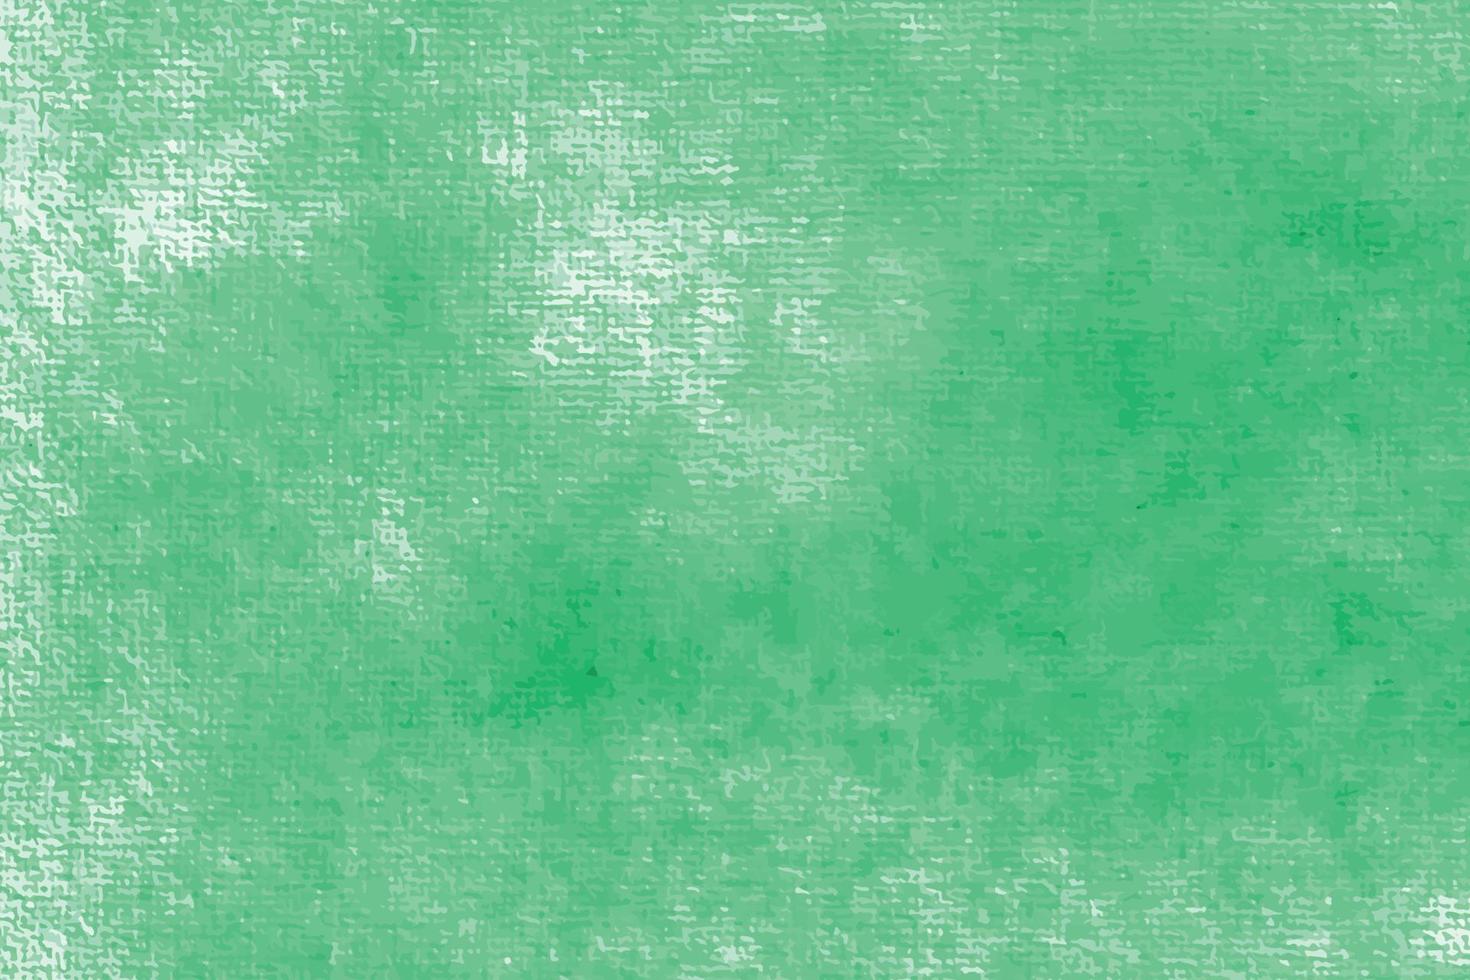 acquarello dipinto a mano texture di sfondo aquarelle astratto verde smeraldo sullo sfondo modello orizzontale vettore